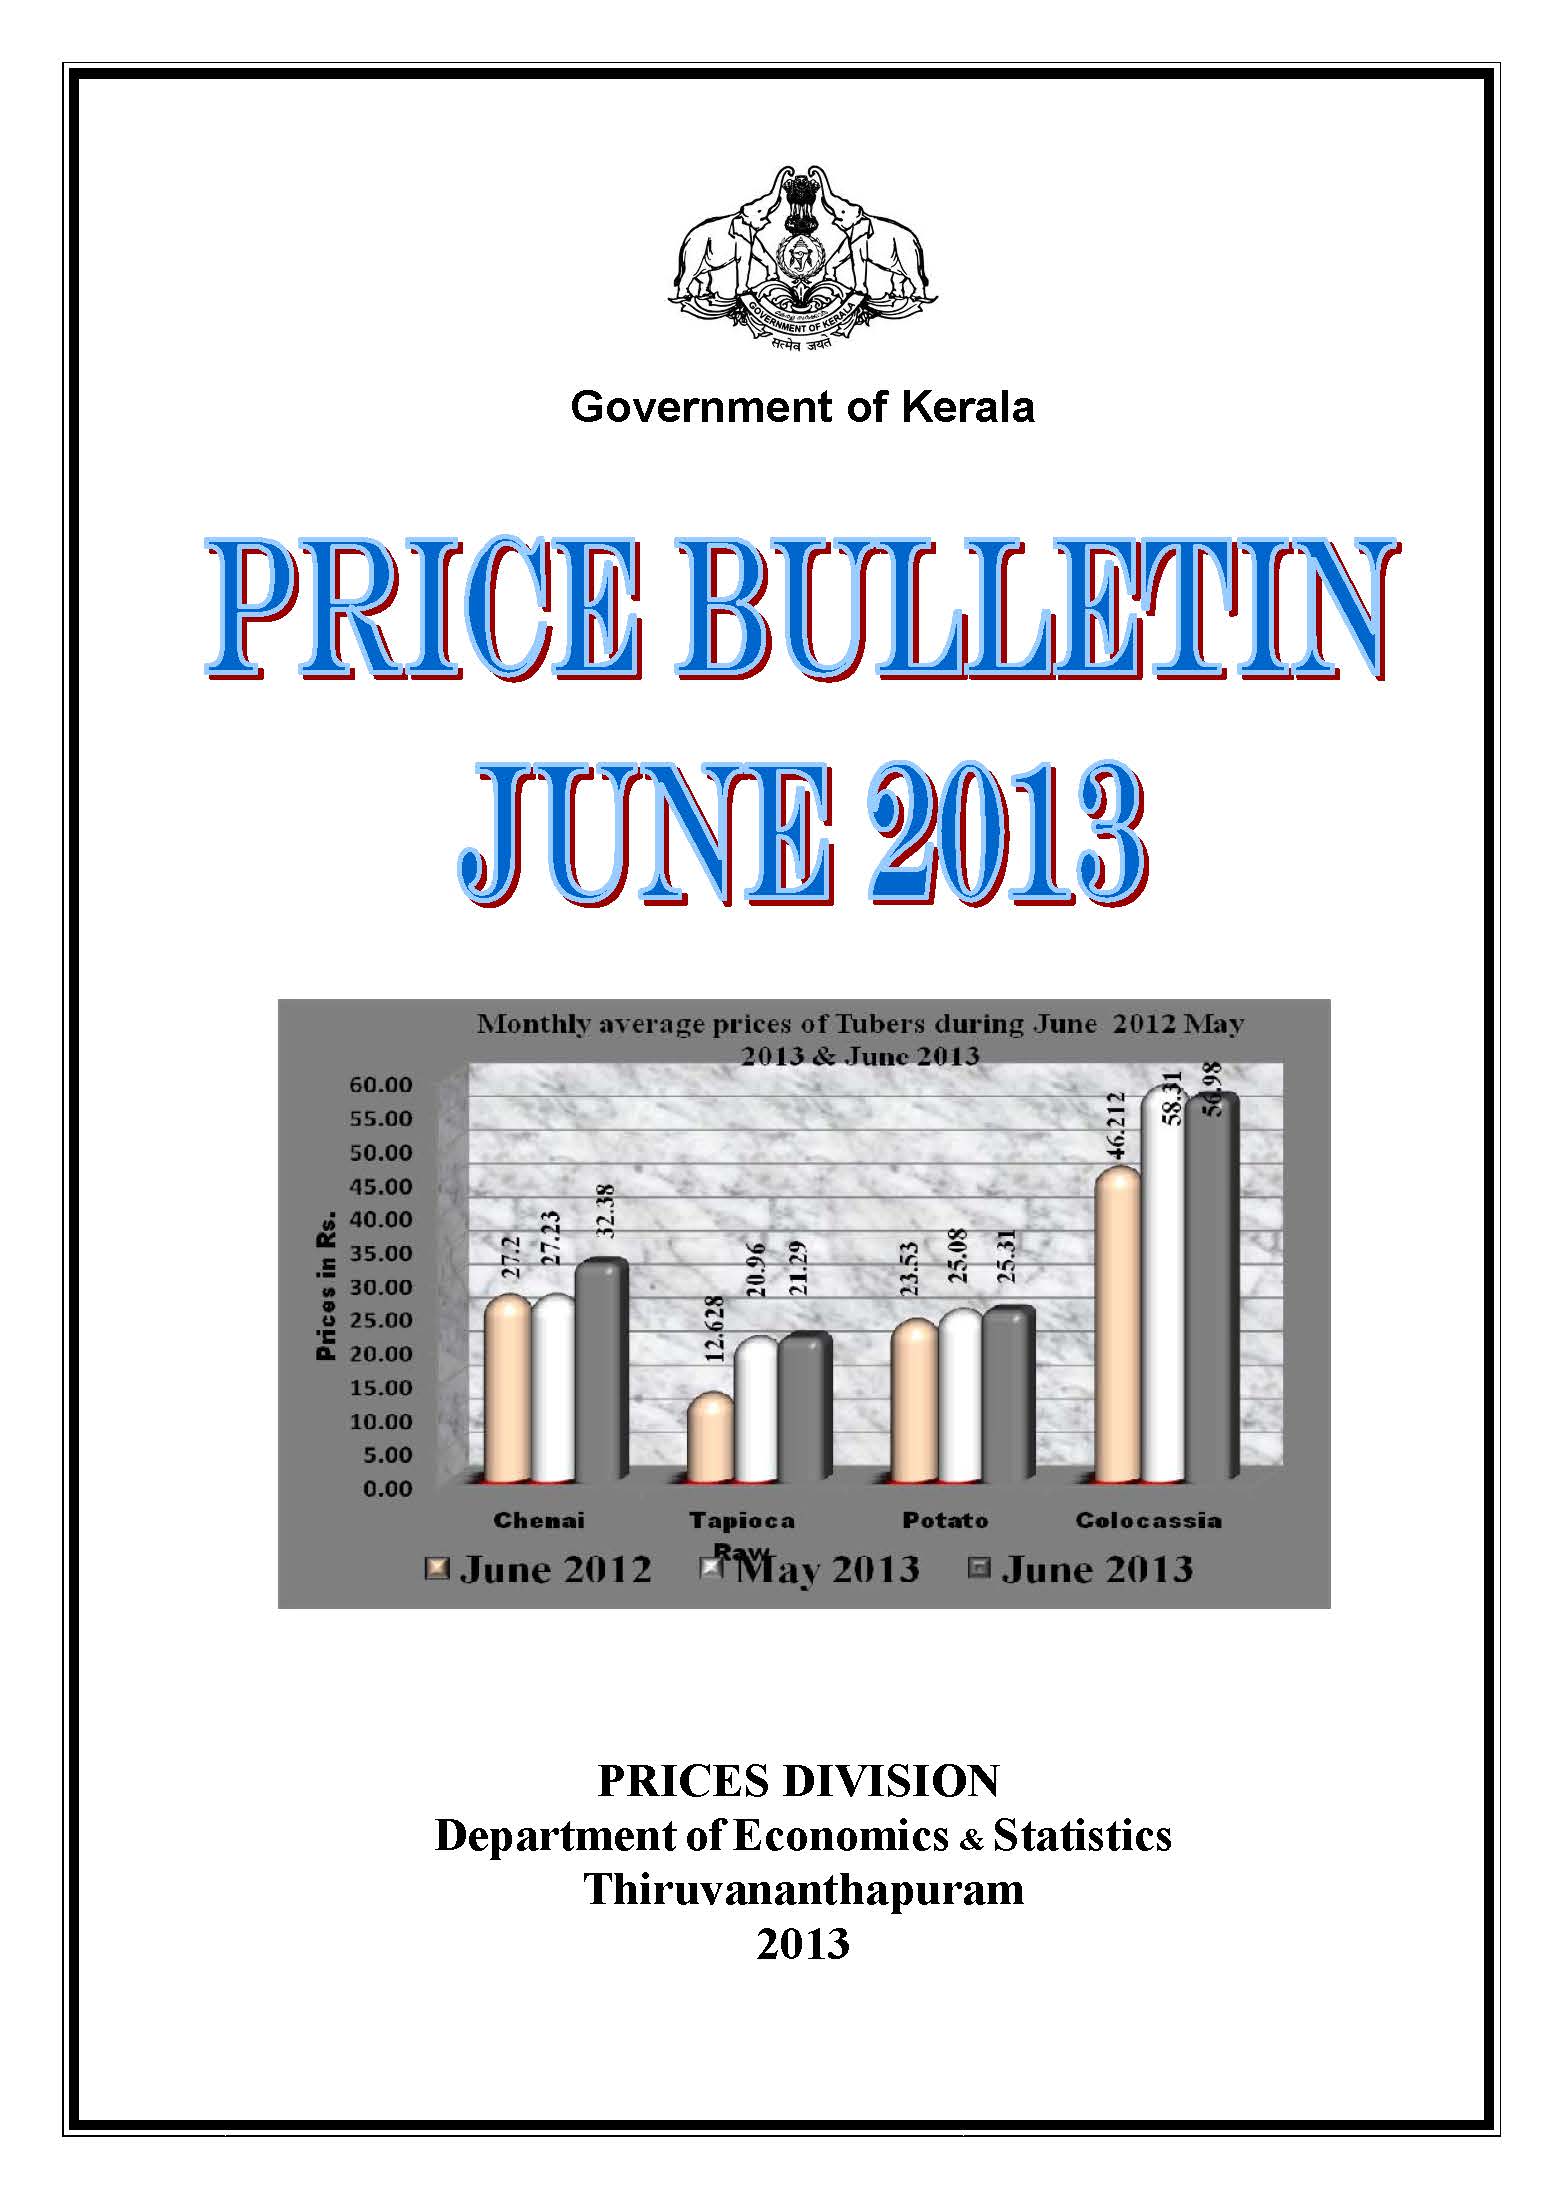 Price Bulletin June 2013